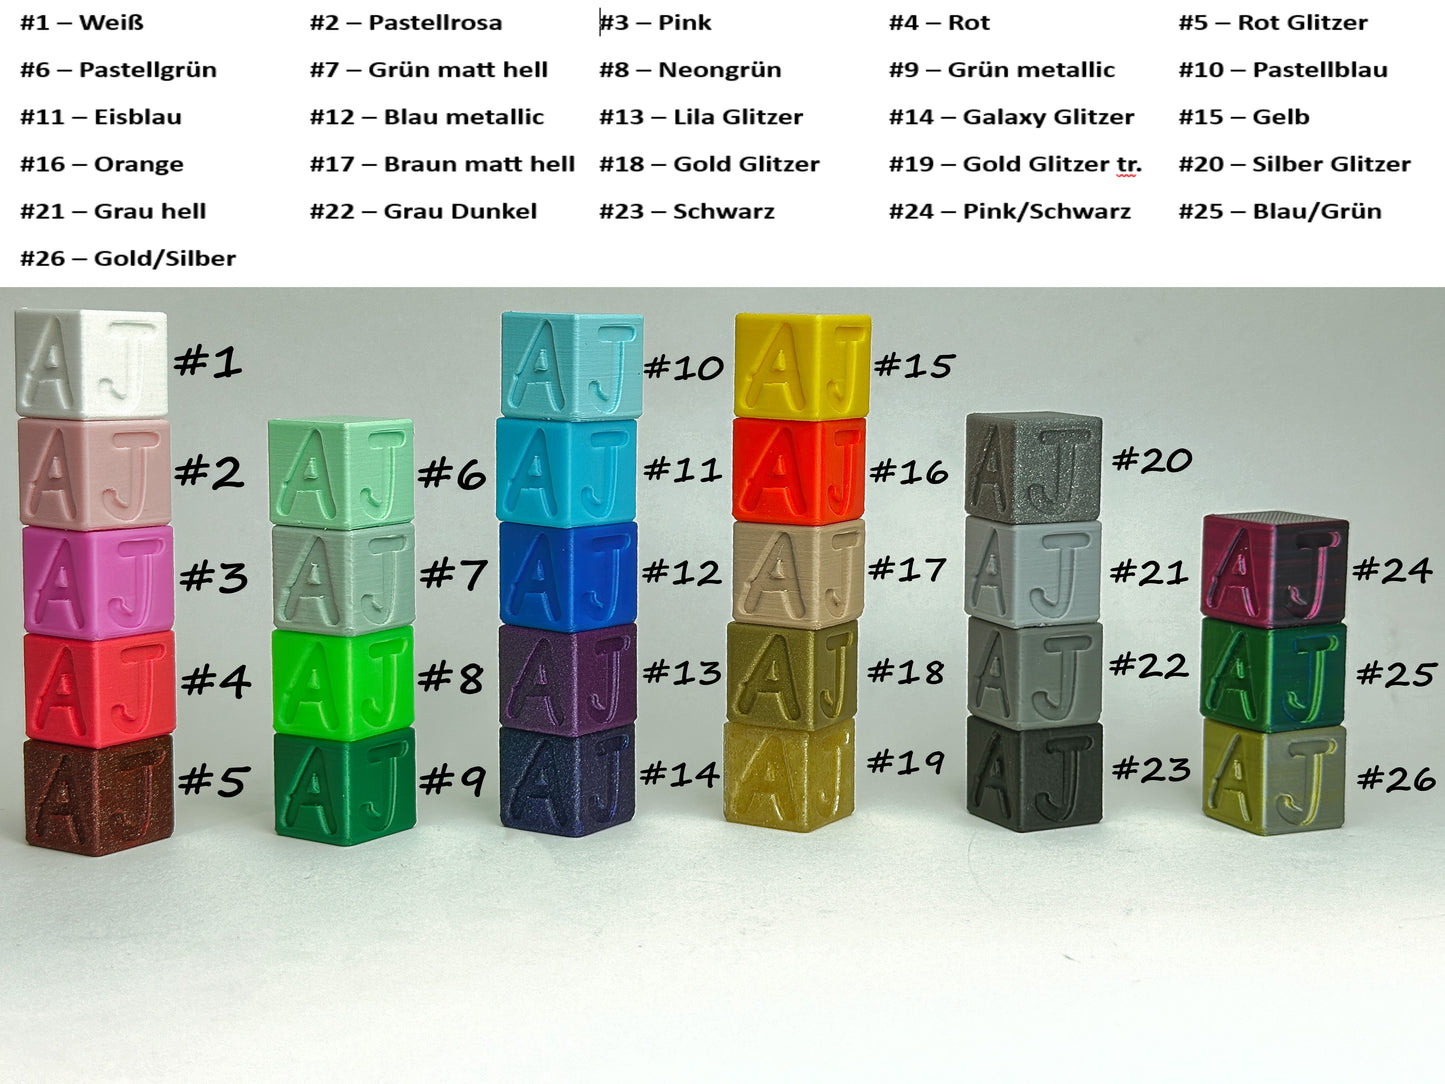 CLASSIC Magnetic Diamond Painting Tower: Kreative Ordnung für 8 Schiffchen mit Magnetverbindung!